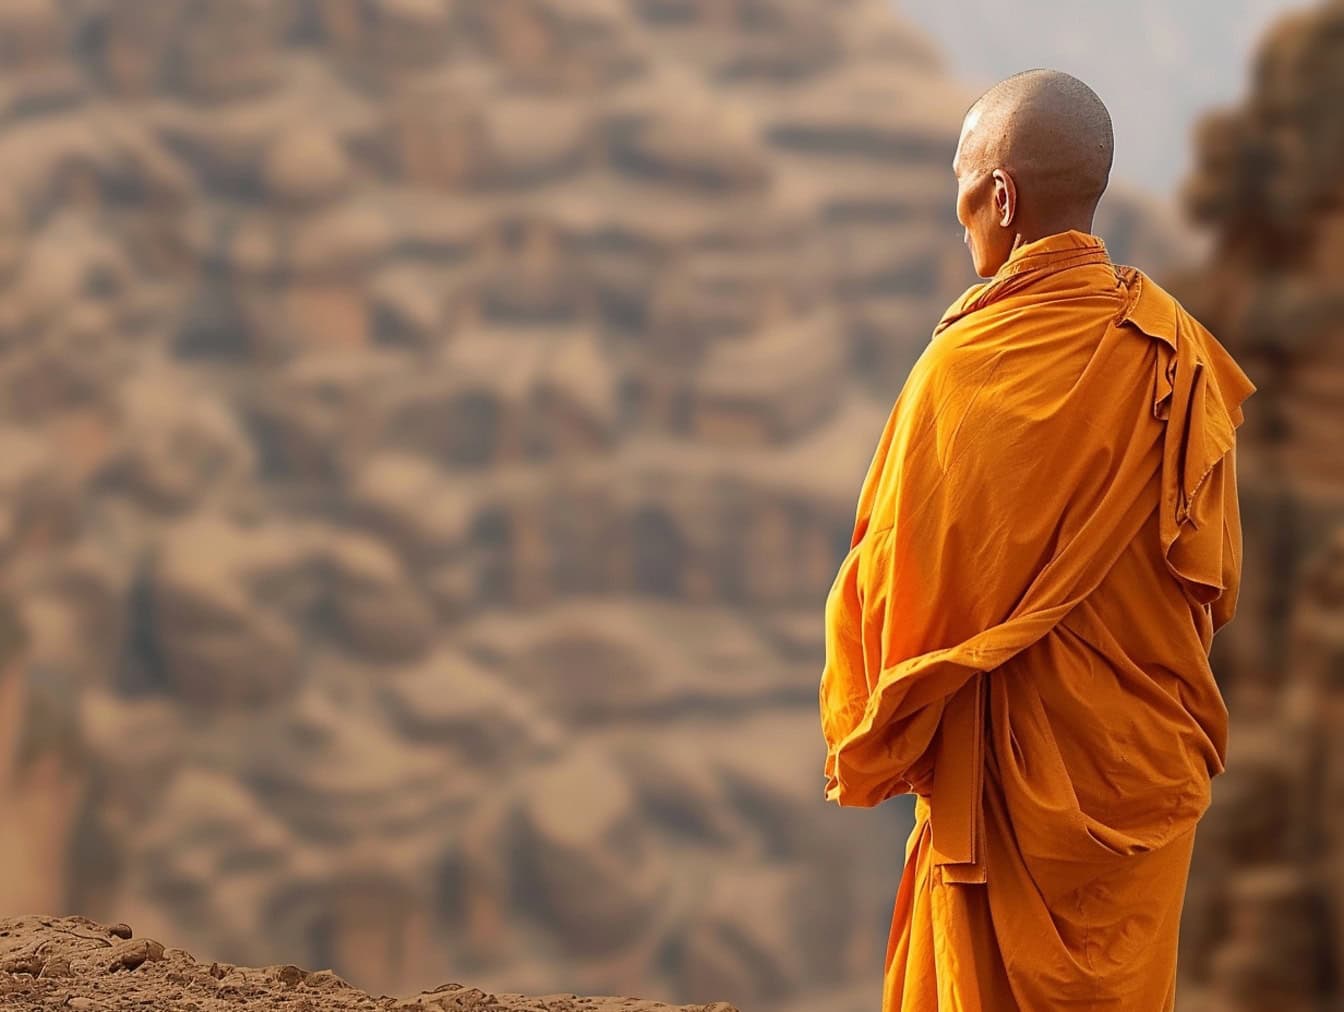 Un monaco buddista con la testa rasata sta in piedi con la schiena voltata nel deserto vestito con una veste arancione